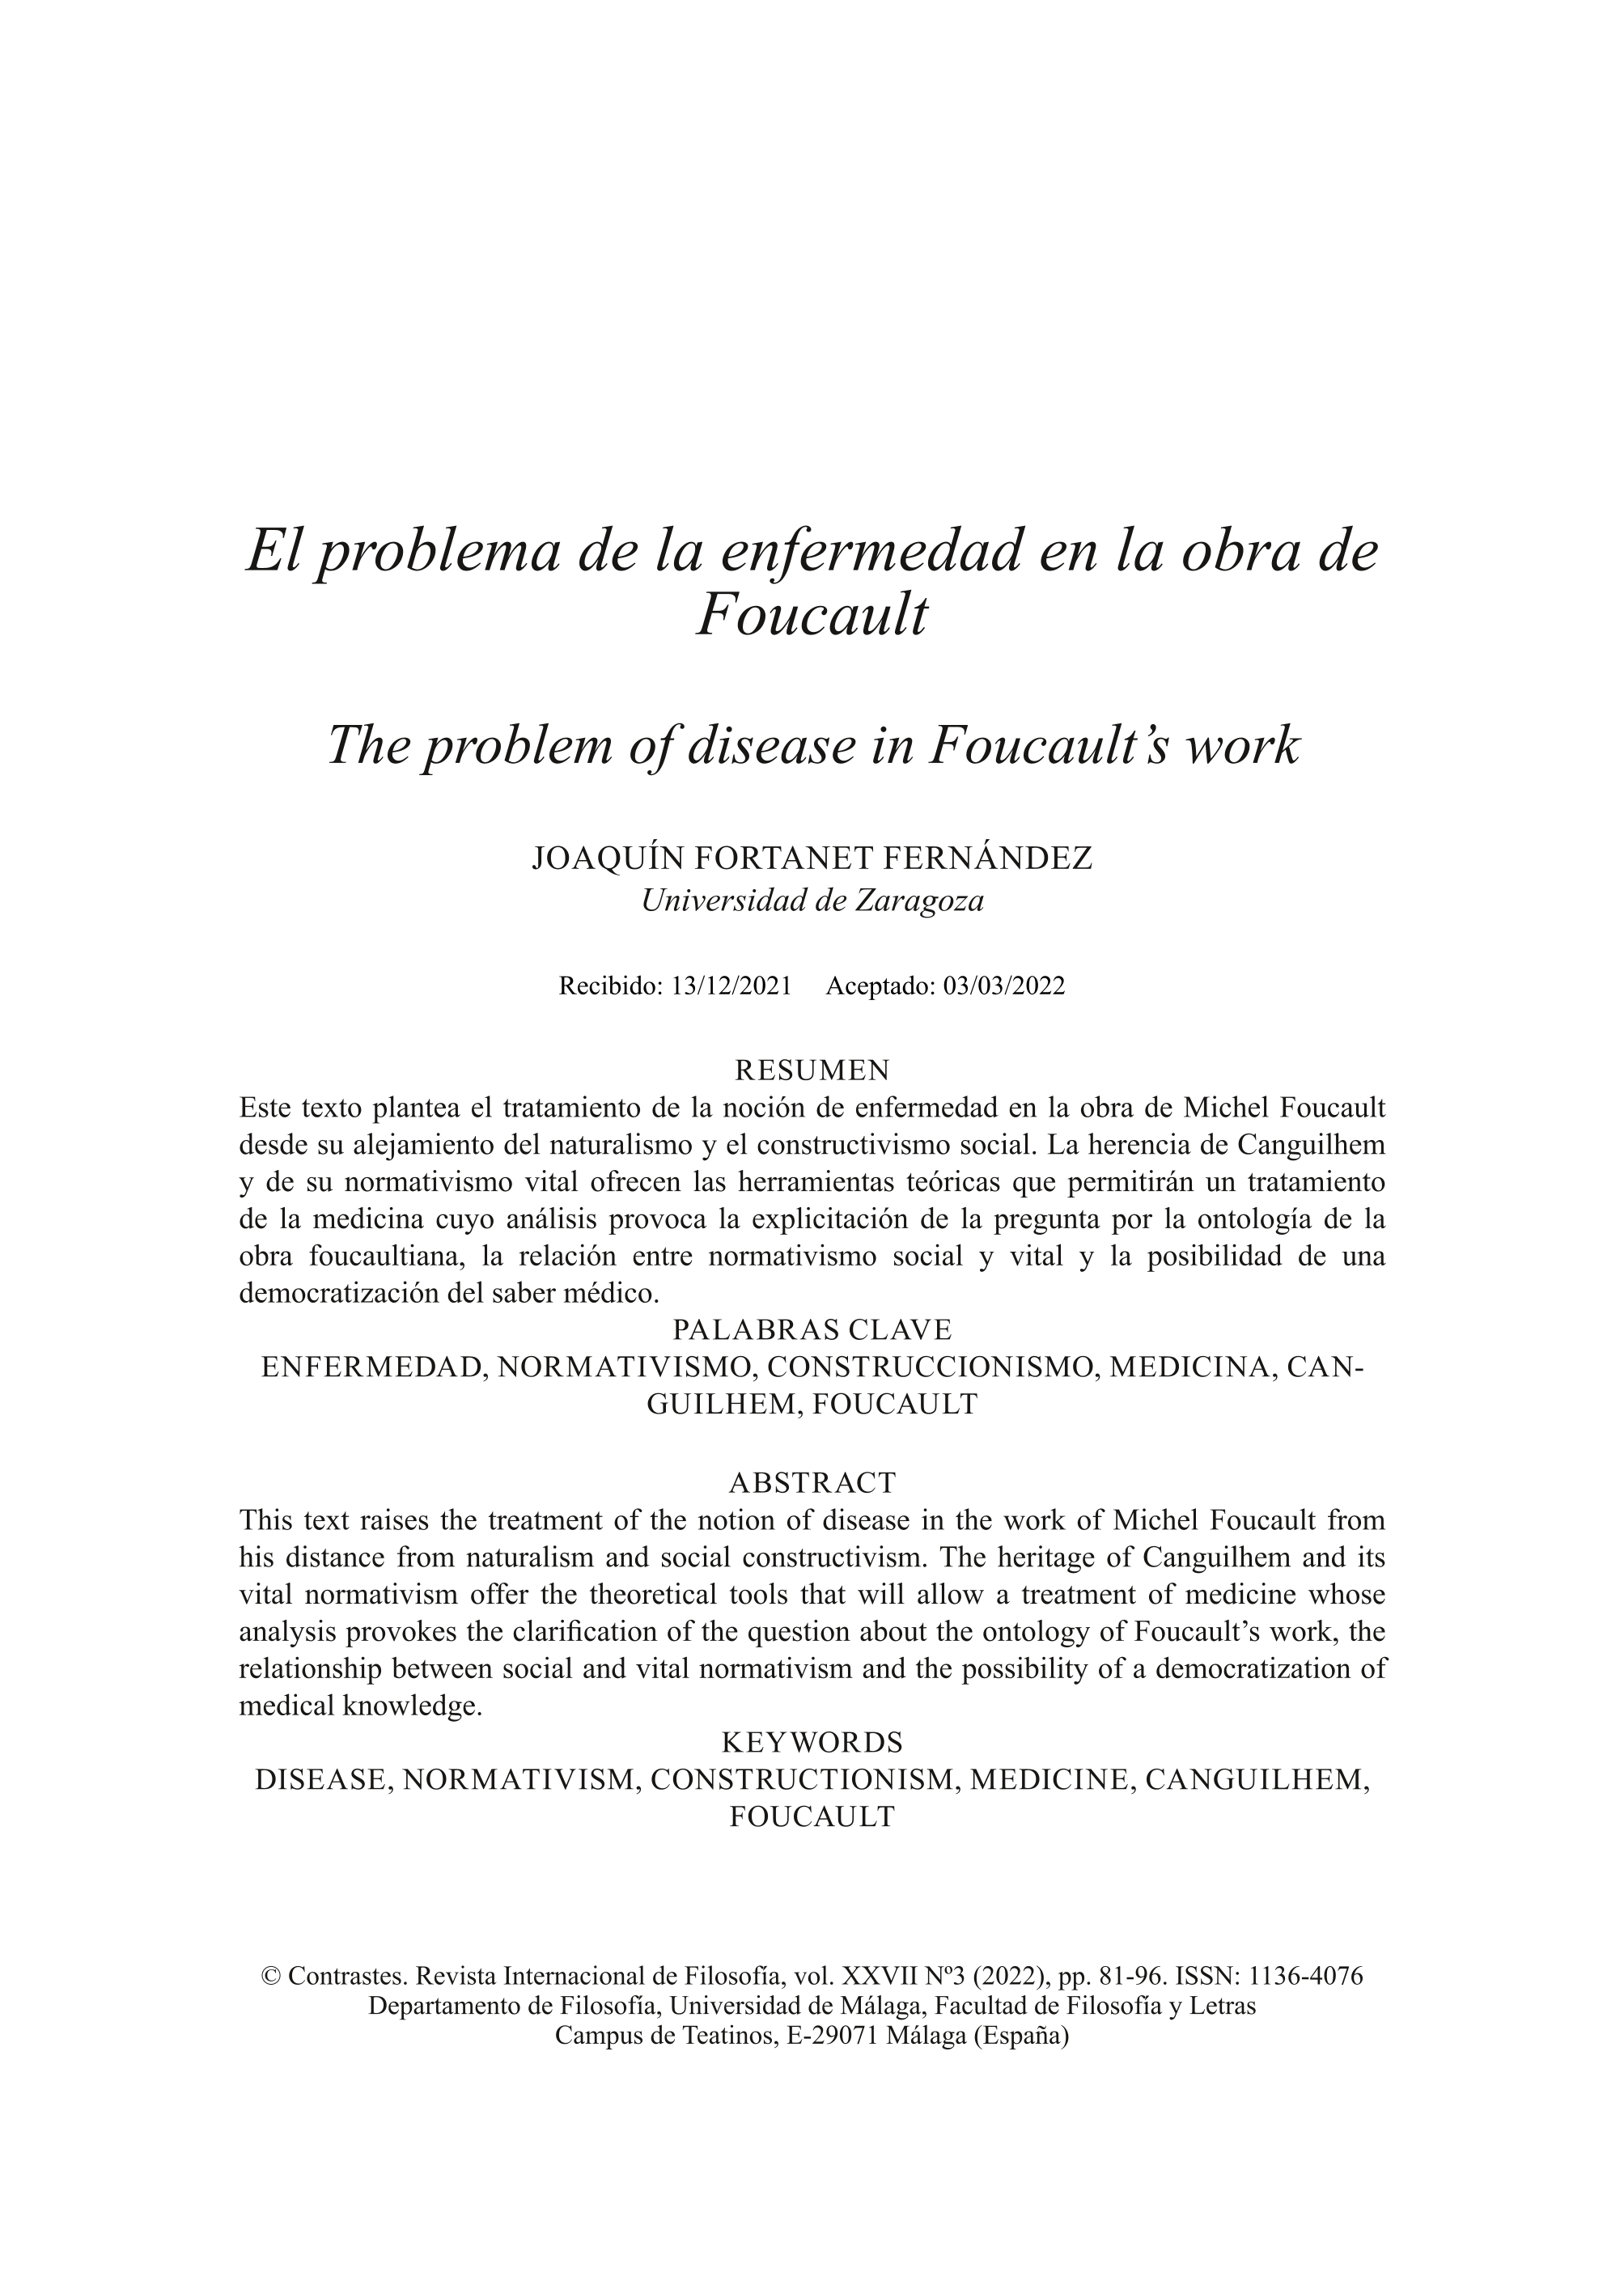 El problema de la enfermedad en la obra de Foucault